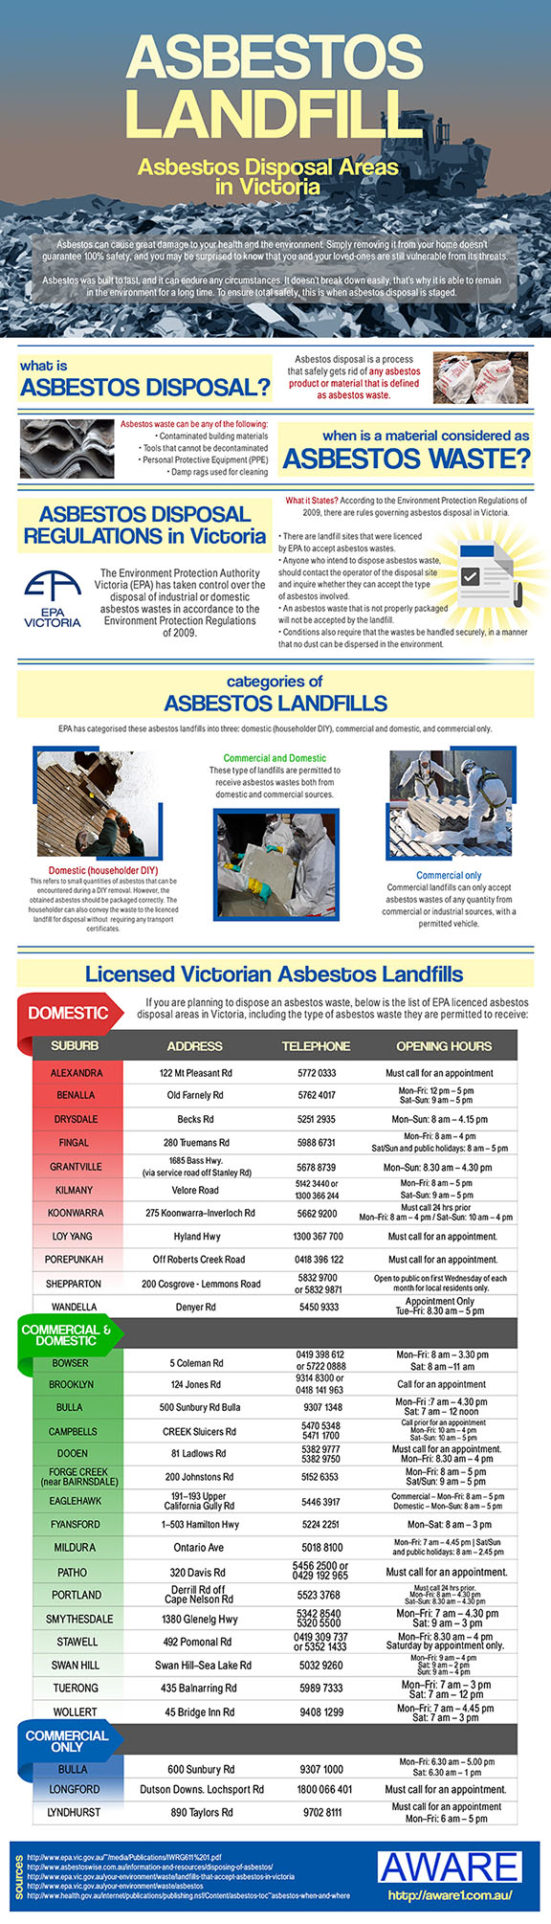 Asbestos Landfill / Asbestos Disposal Areas in Victoria